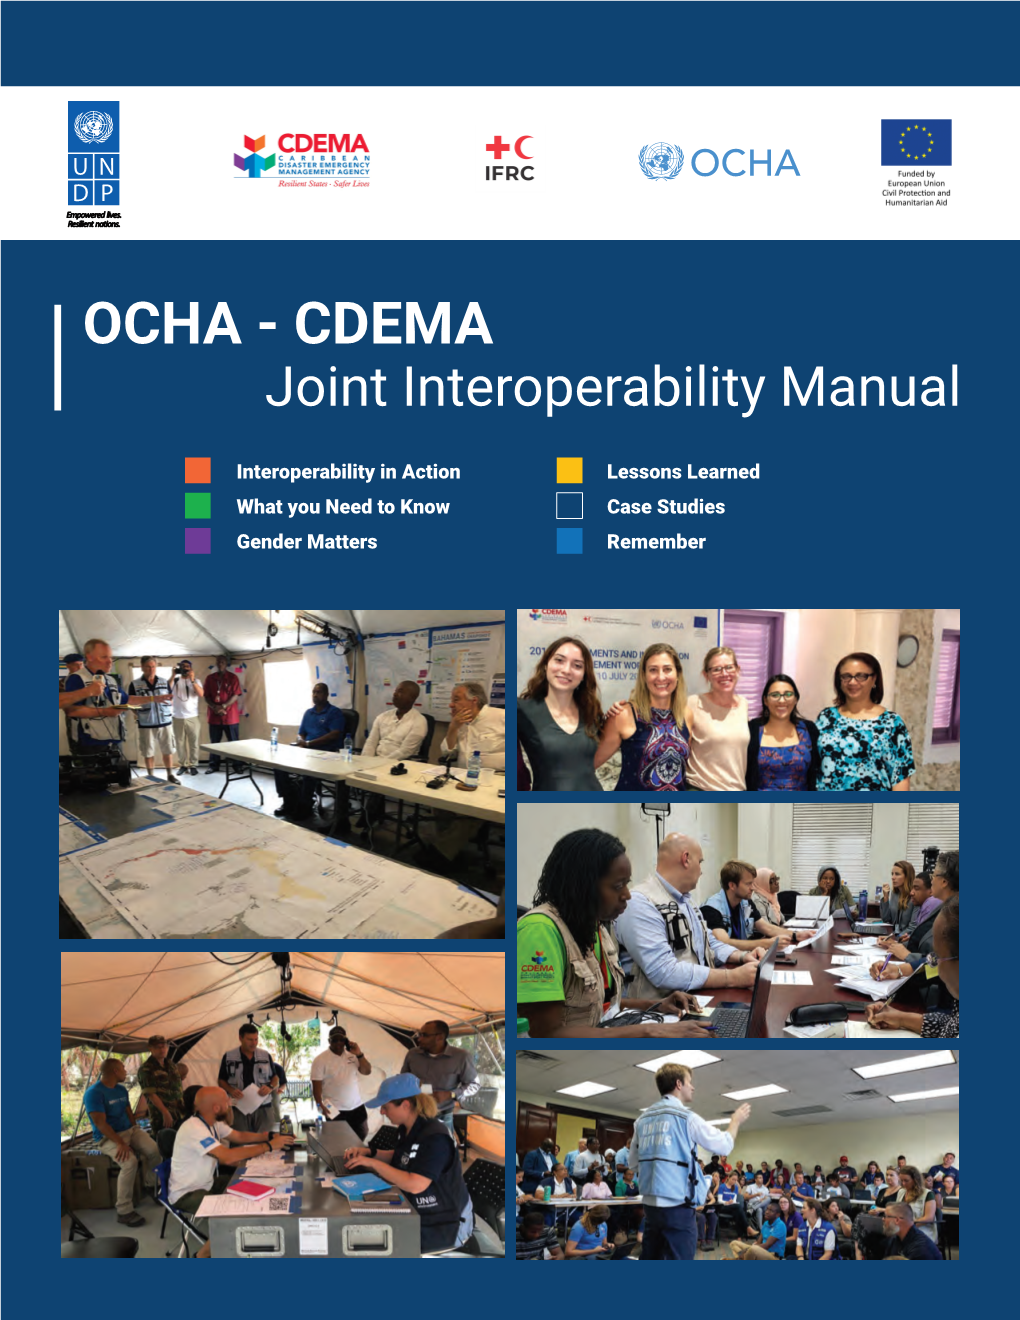 OCHA - CDEMA Joint Interoperability Manual